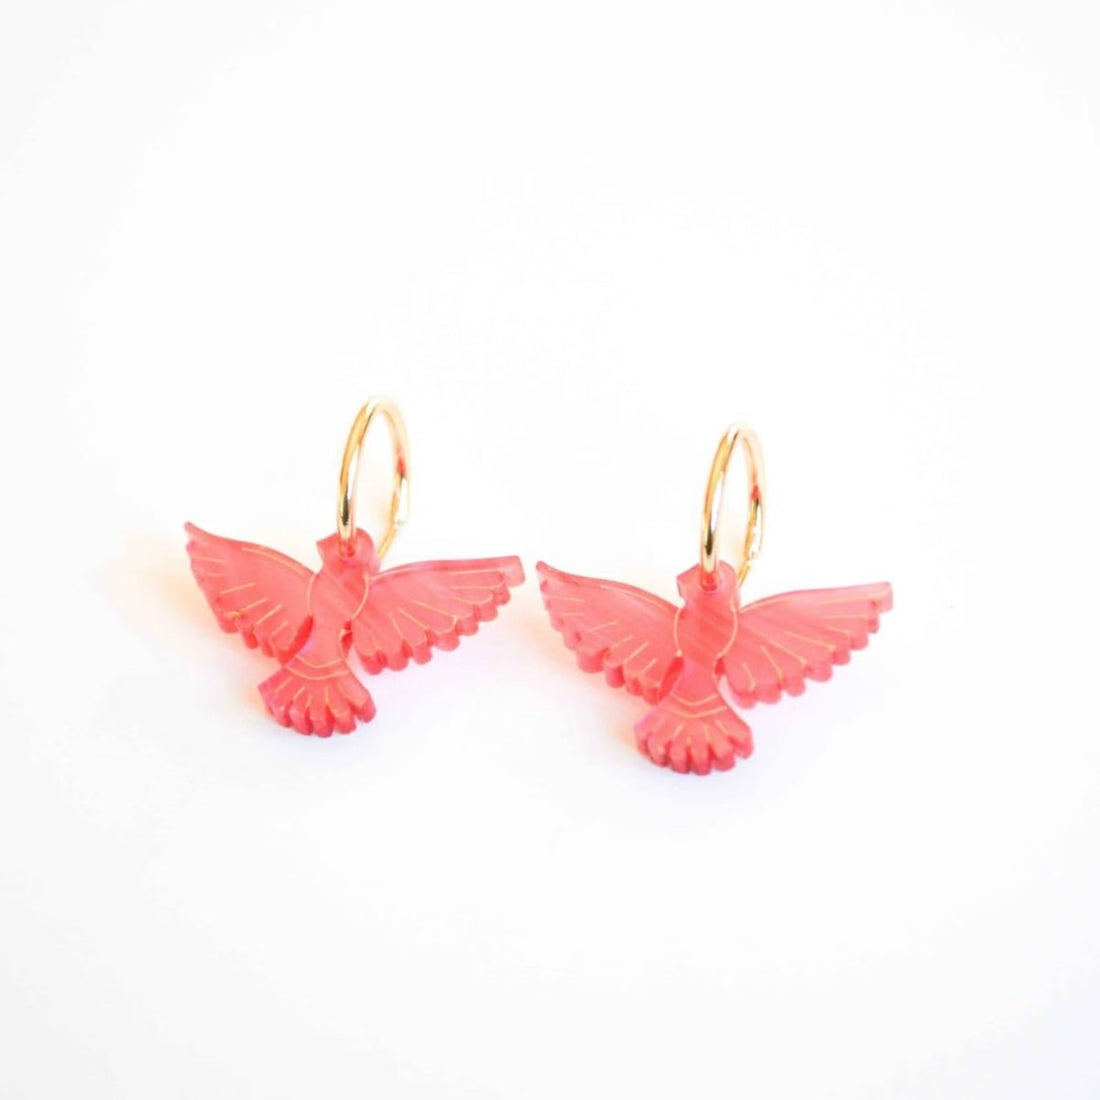 Hagen + Co - Lovebird Earrings, Rose - The Flower Crate